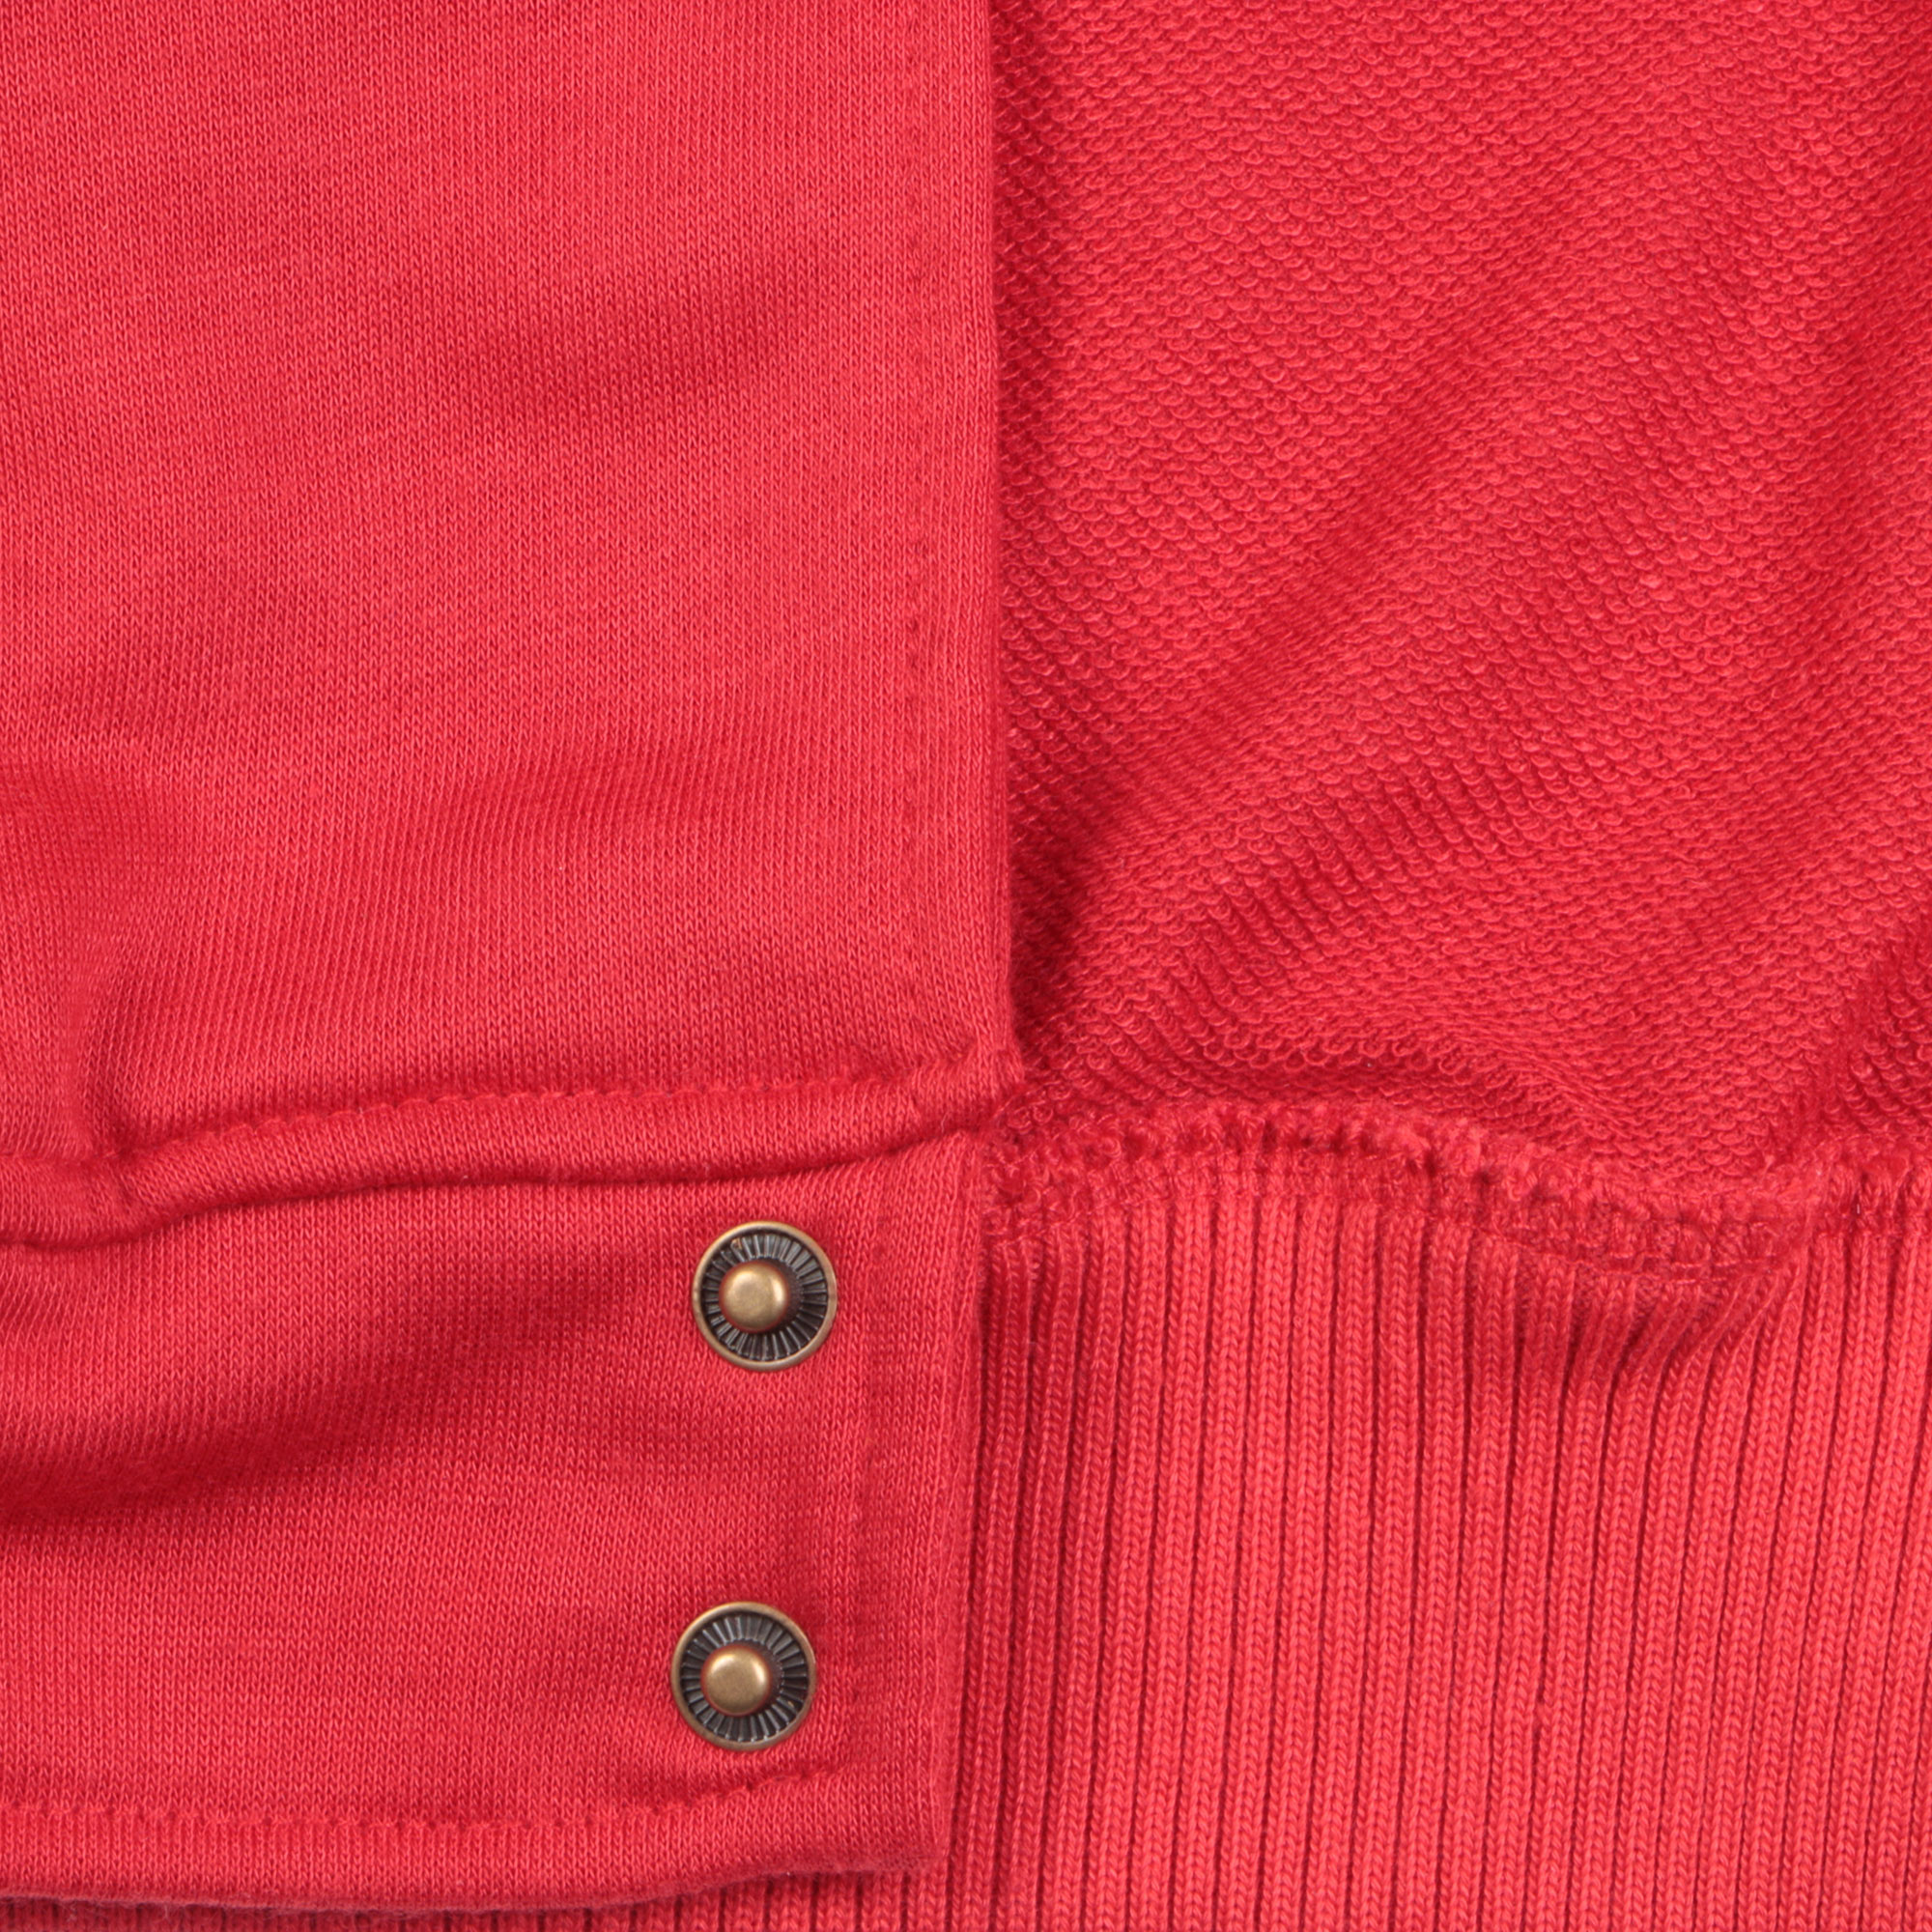 Бомбер Garment красный/белый XL хлопок, размер XL - фото 4